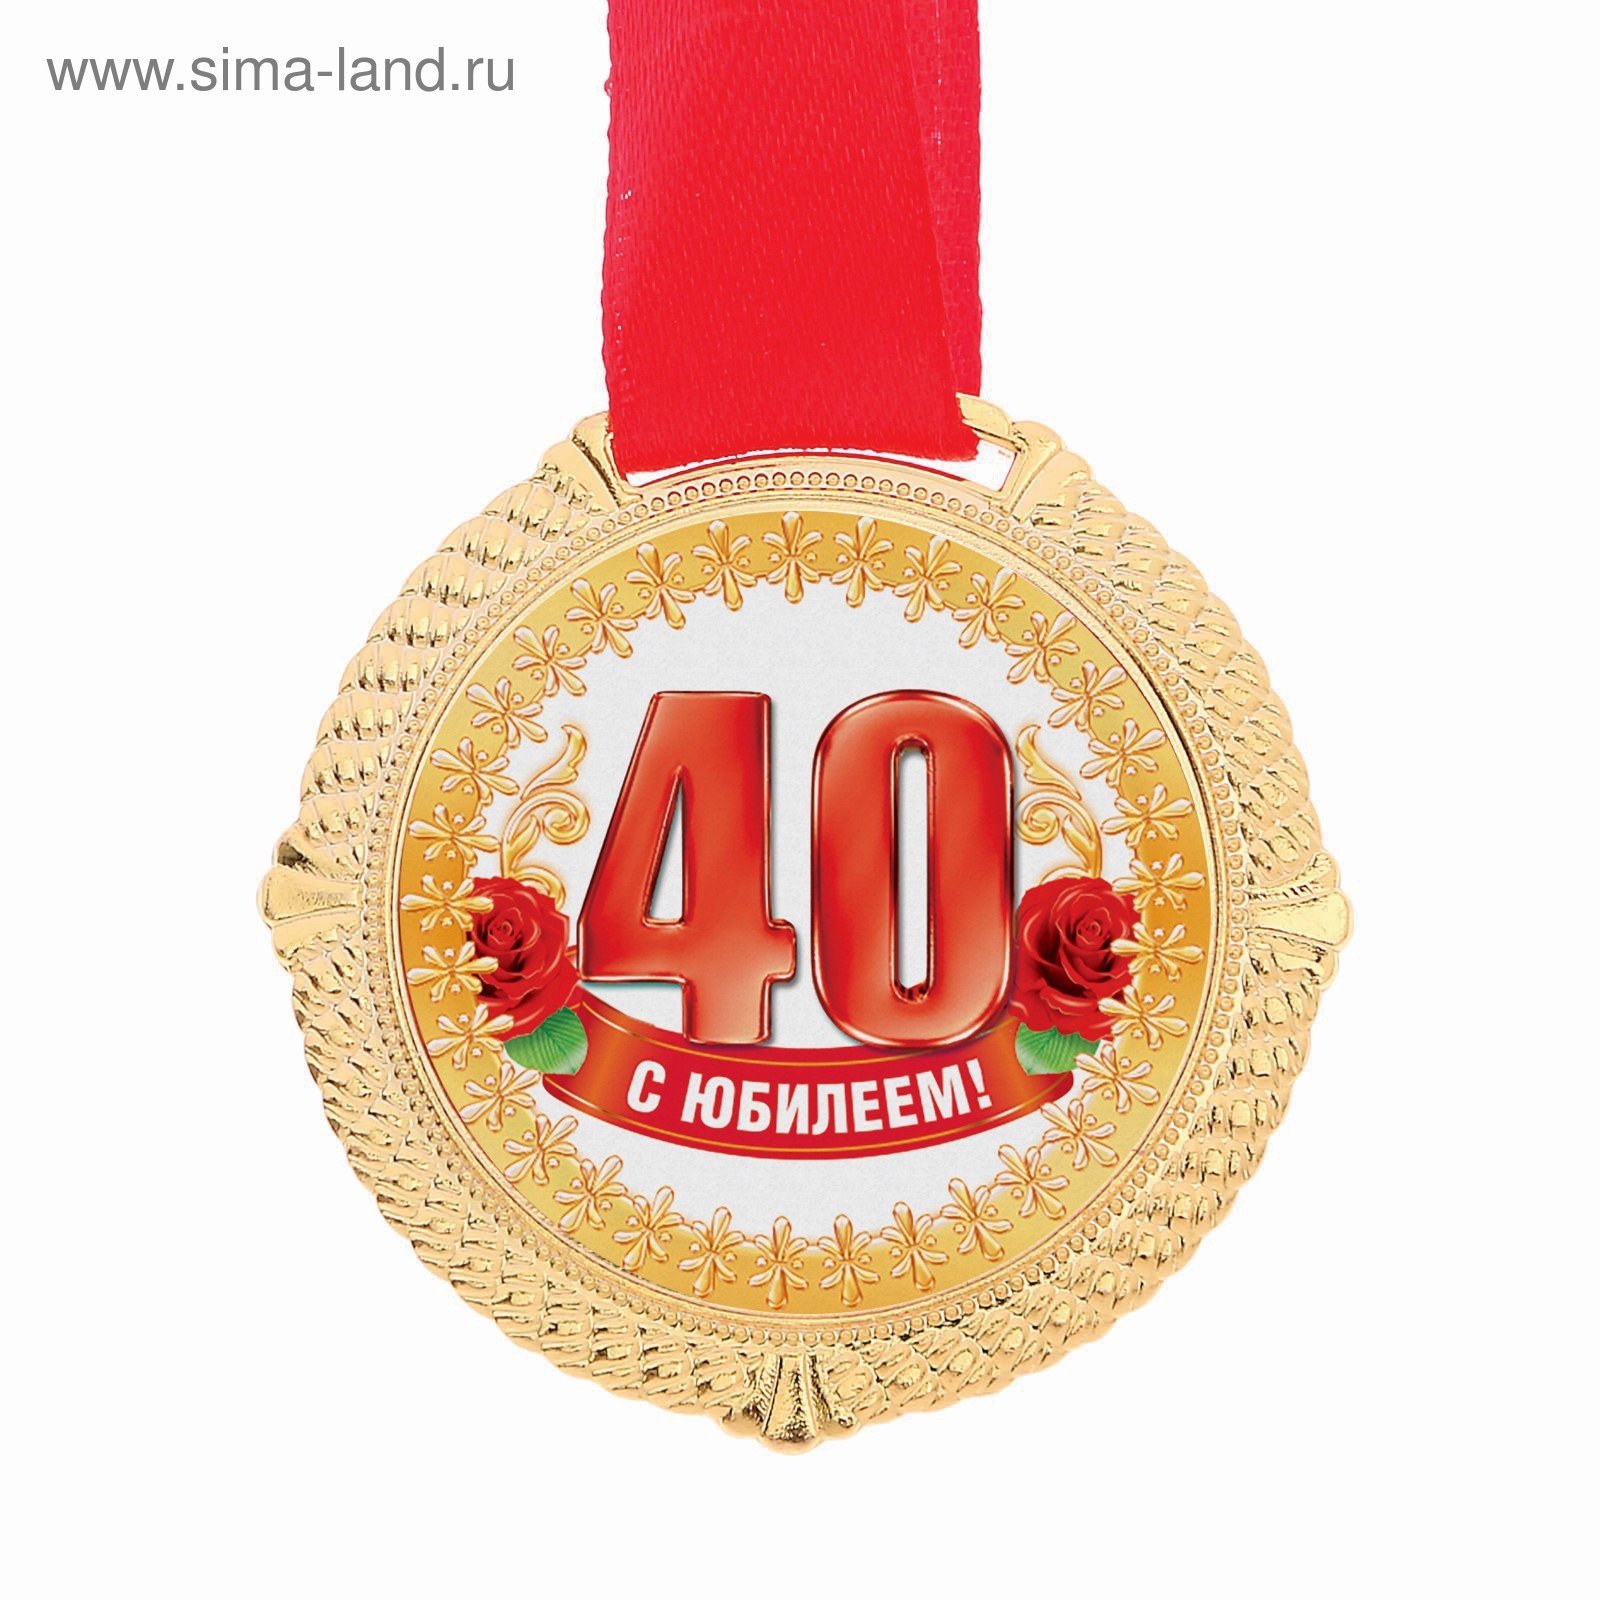 Можно отмечать 40 летия. Медаль 40 лет юбилей. Медаль к 40 летнему юбилею. С юбилеем 40 лет. Поздравления с днём рождения 40 лет.